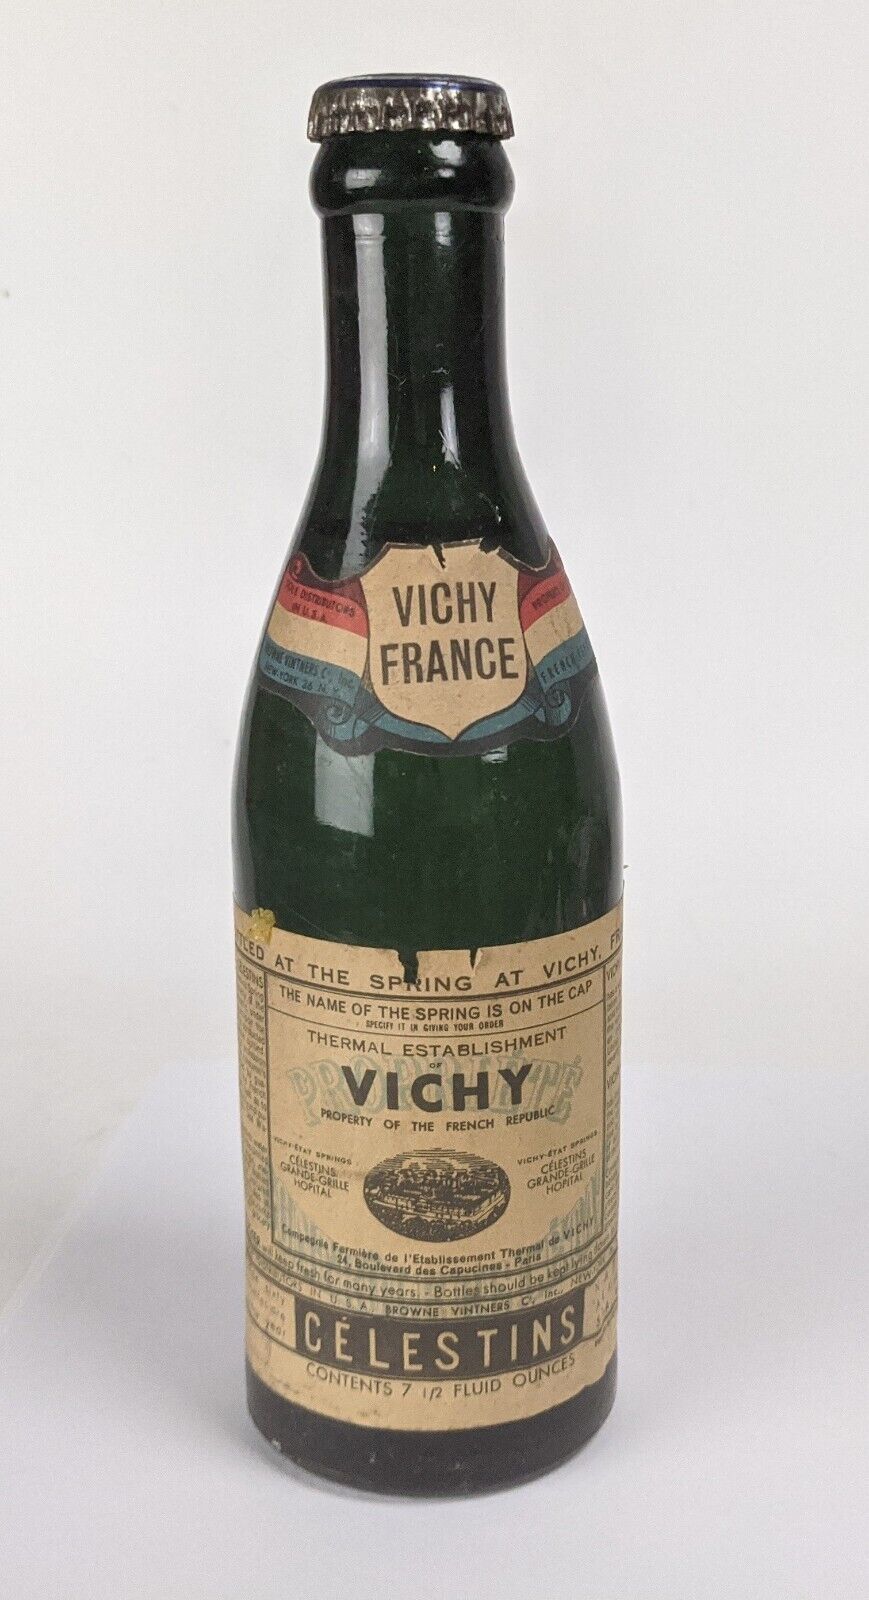 Vichy-Etat France Célestins Glass Water Bottle Sealed 7.5oz Rare Antique Vintage